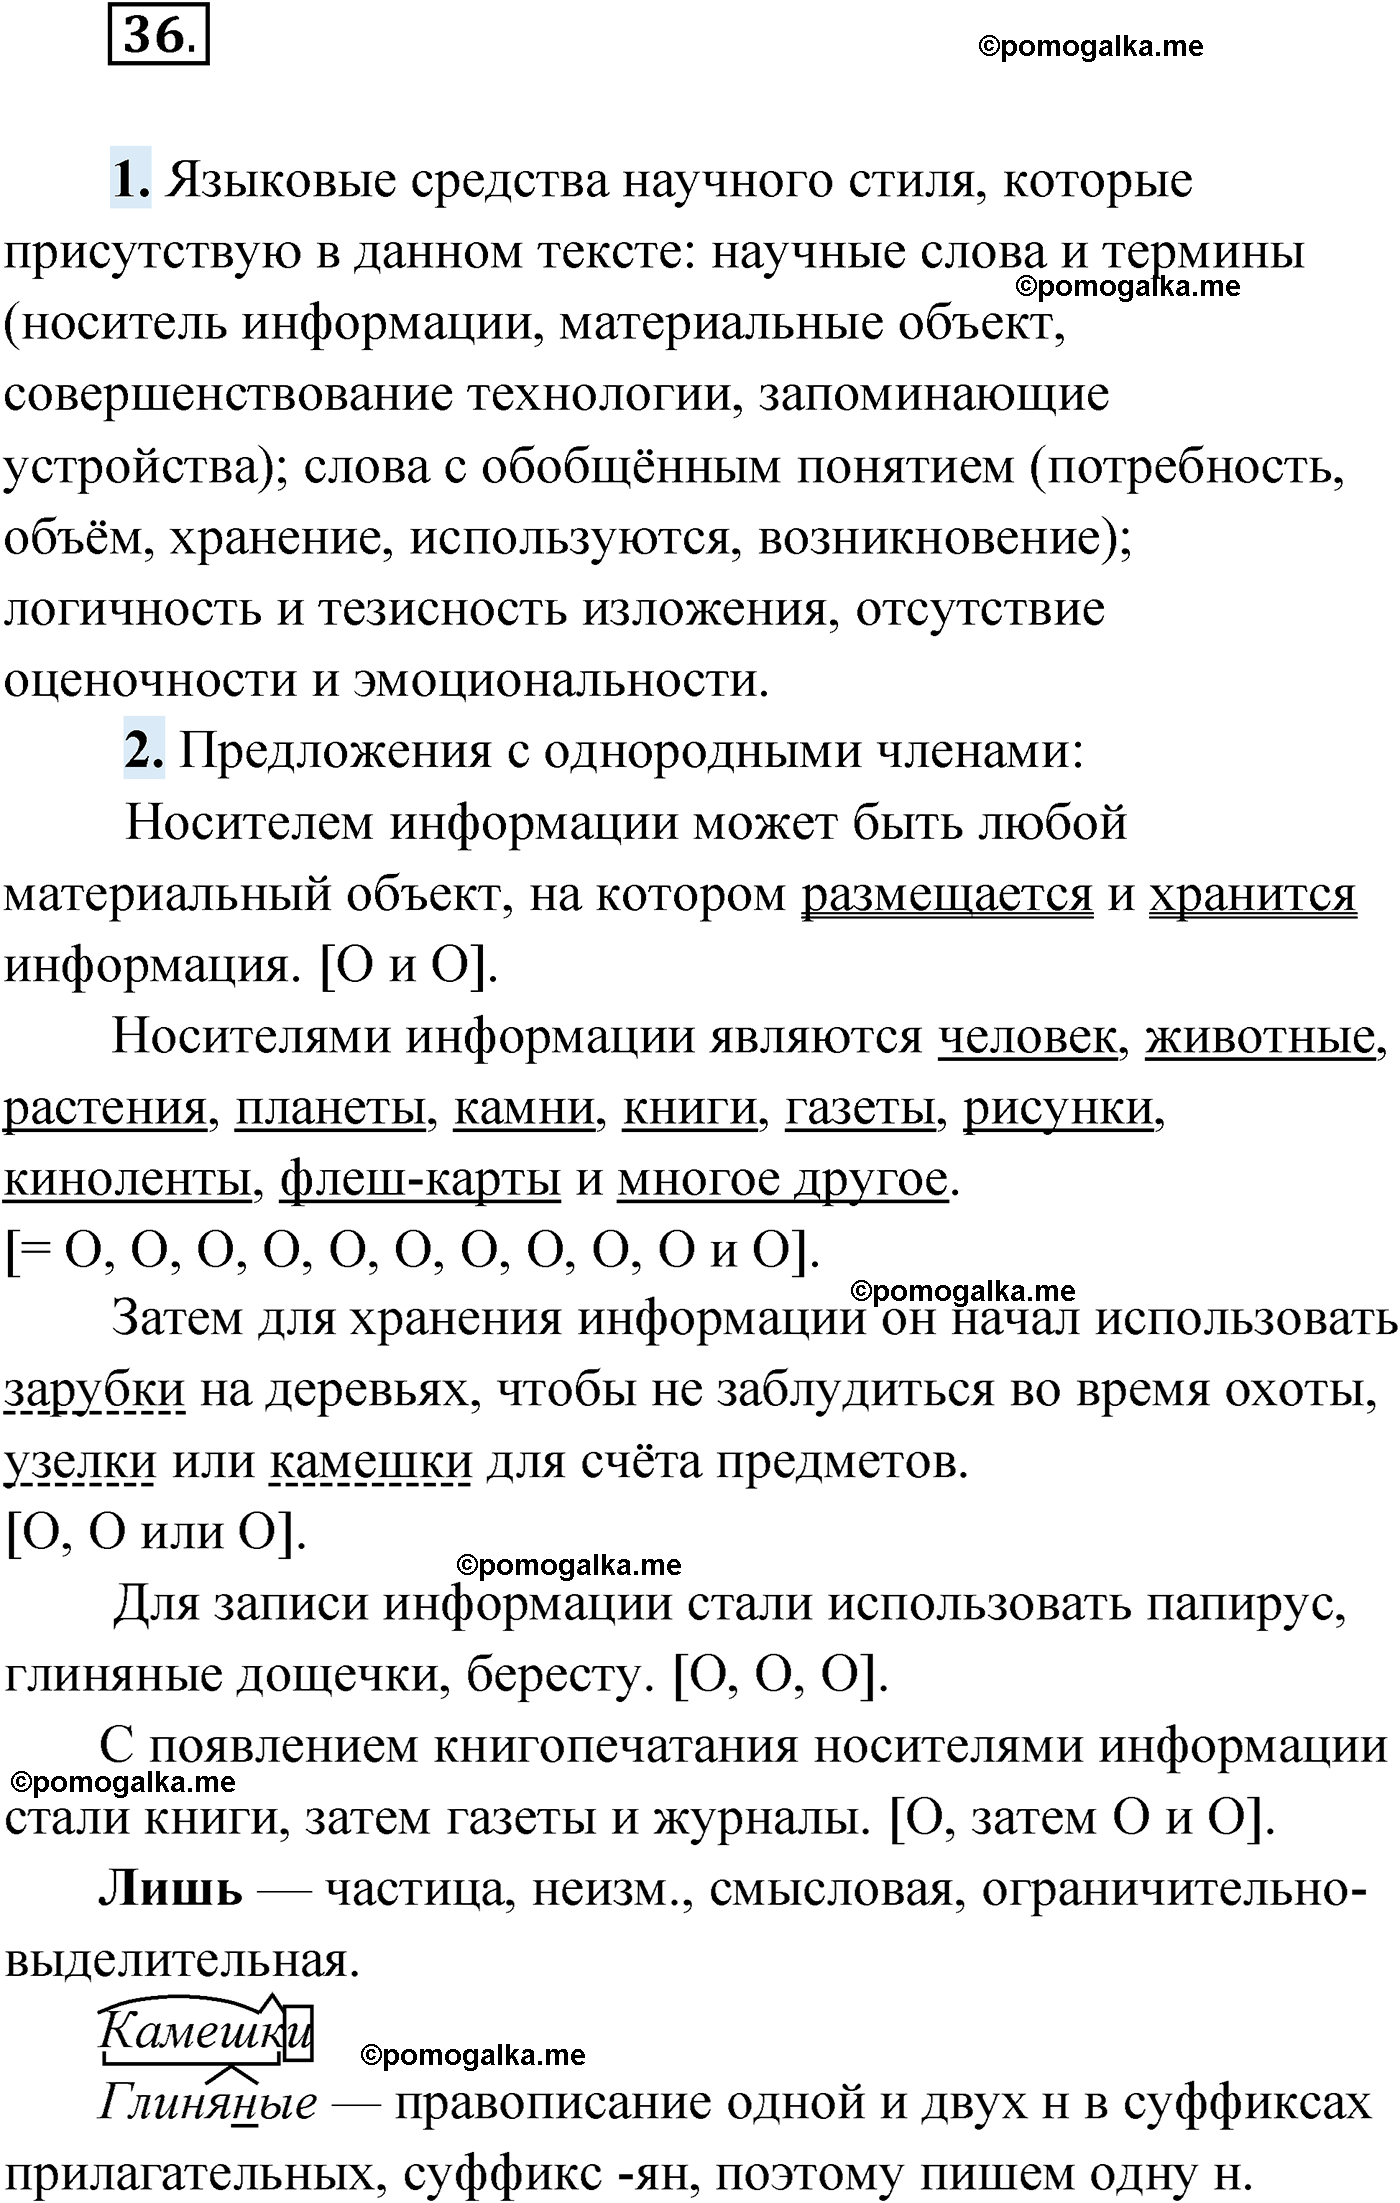 упражнение №36 русский язык 9 класс Мурина 2019 год